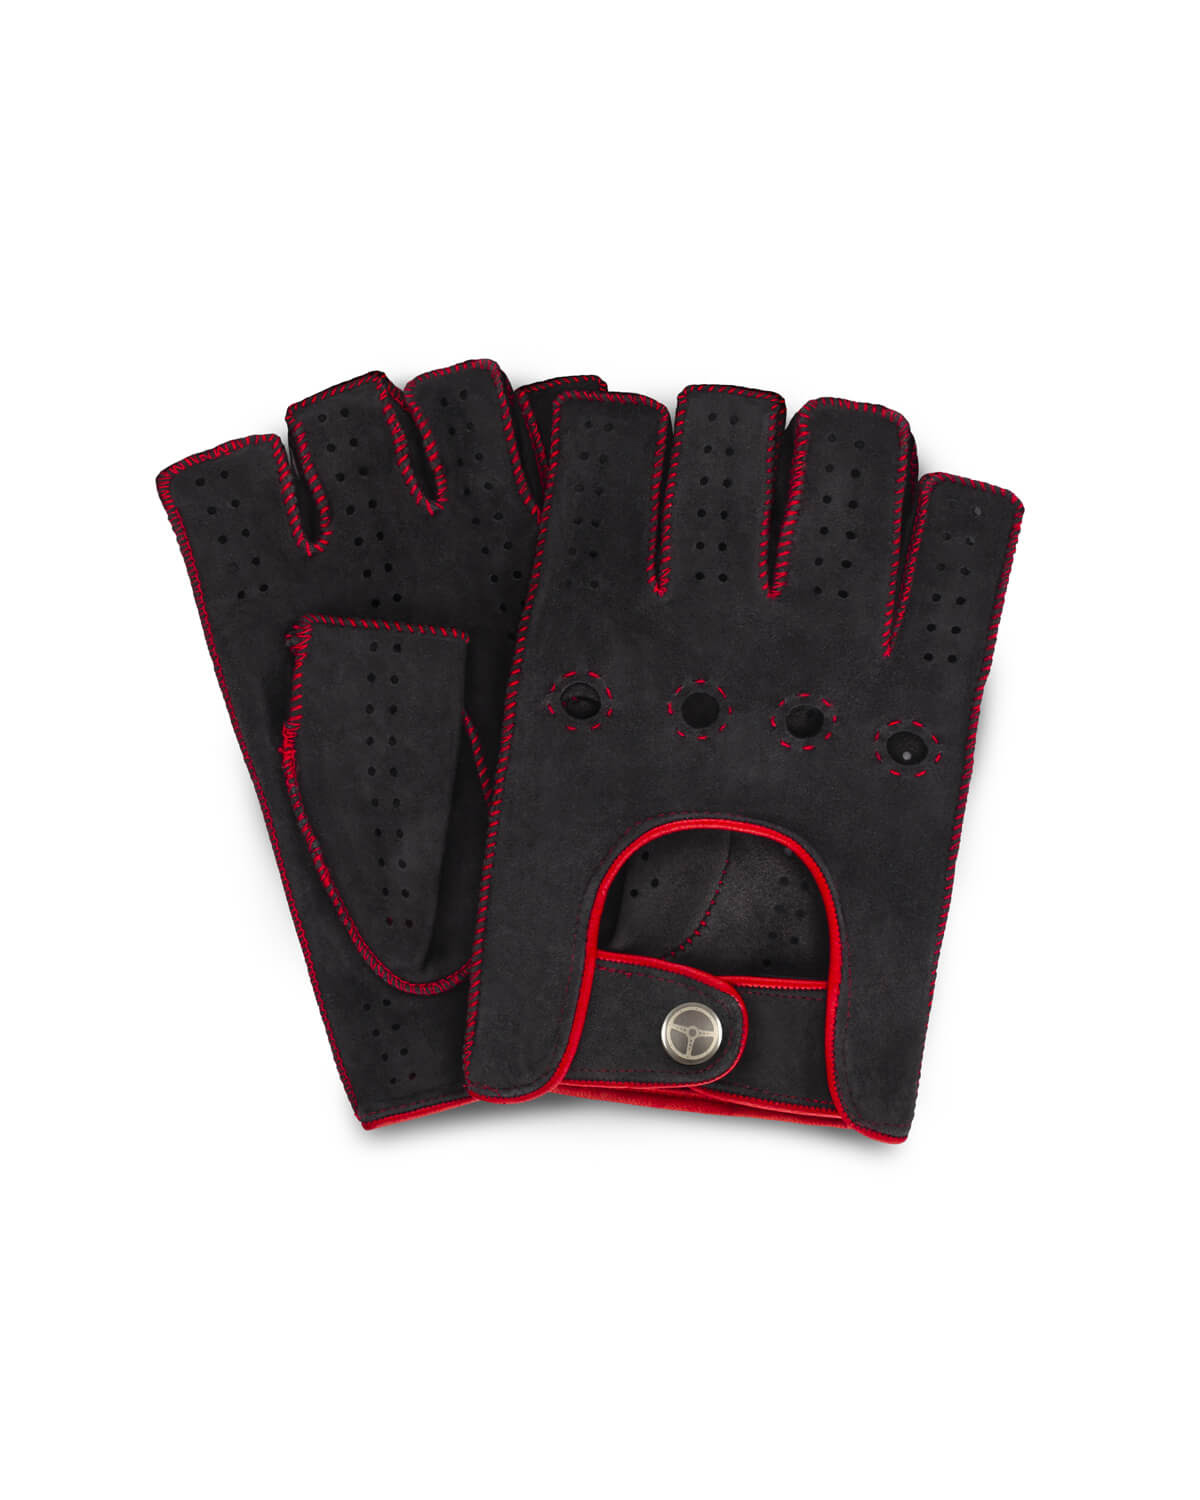 powerslide-fingerless-grey-red-driving-gloves.jpg